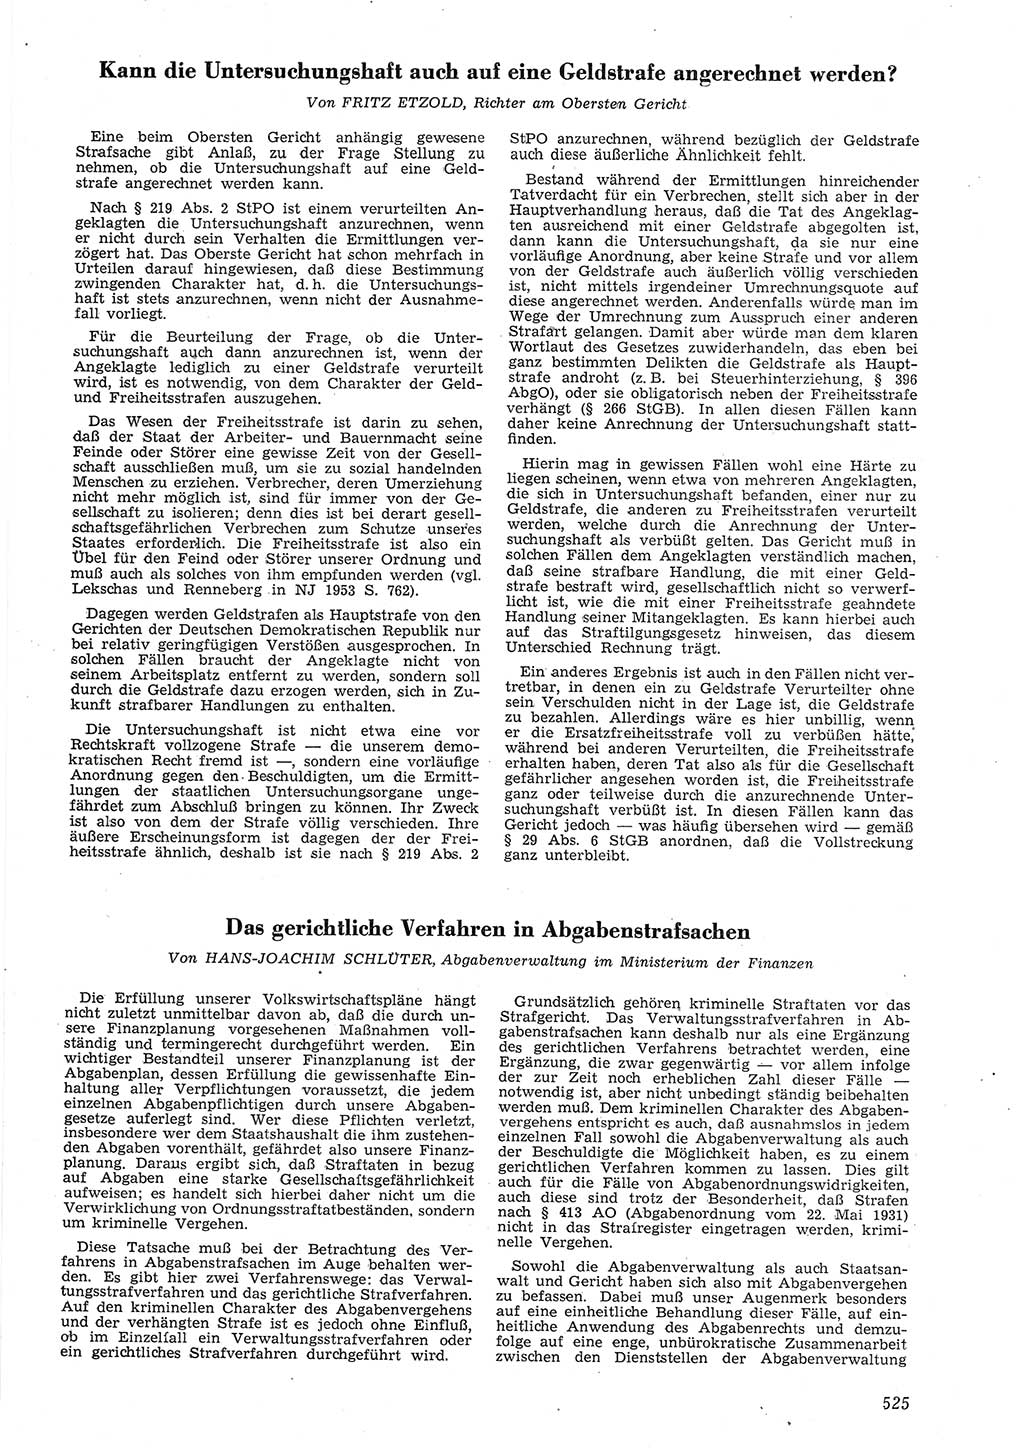 Neue Justiz (NJ), Zeitschrift für Recht und Rechtswissenschaft [Deutsche Demokratische Republik (DDR)], 8. Jahrgang 1954, Seite 525 (NJ DDR 1954, S. 525)